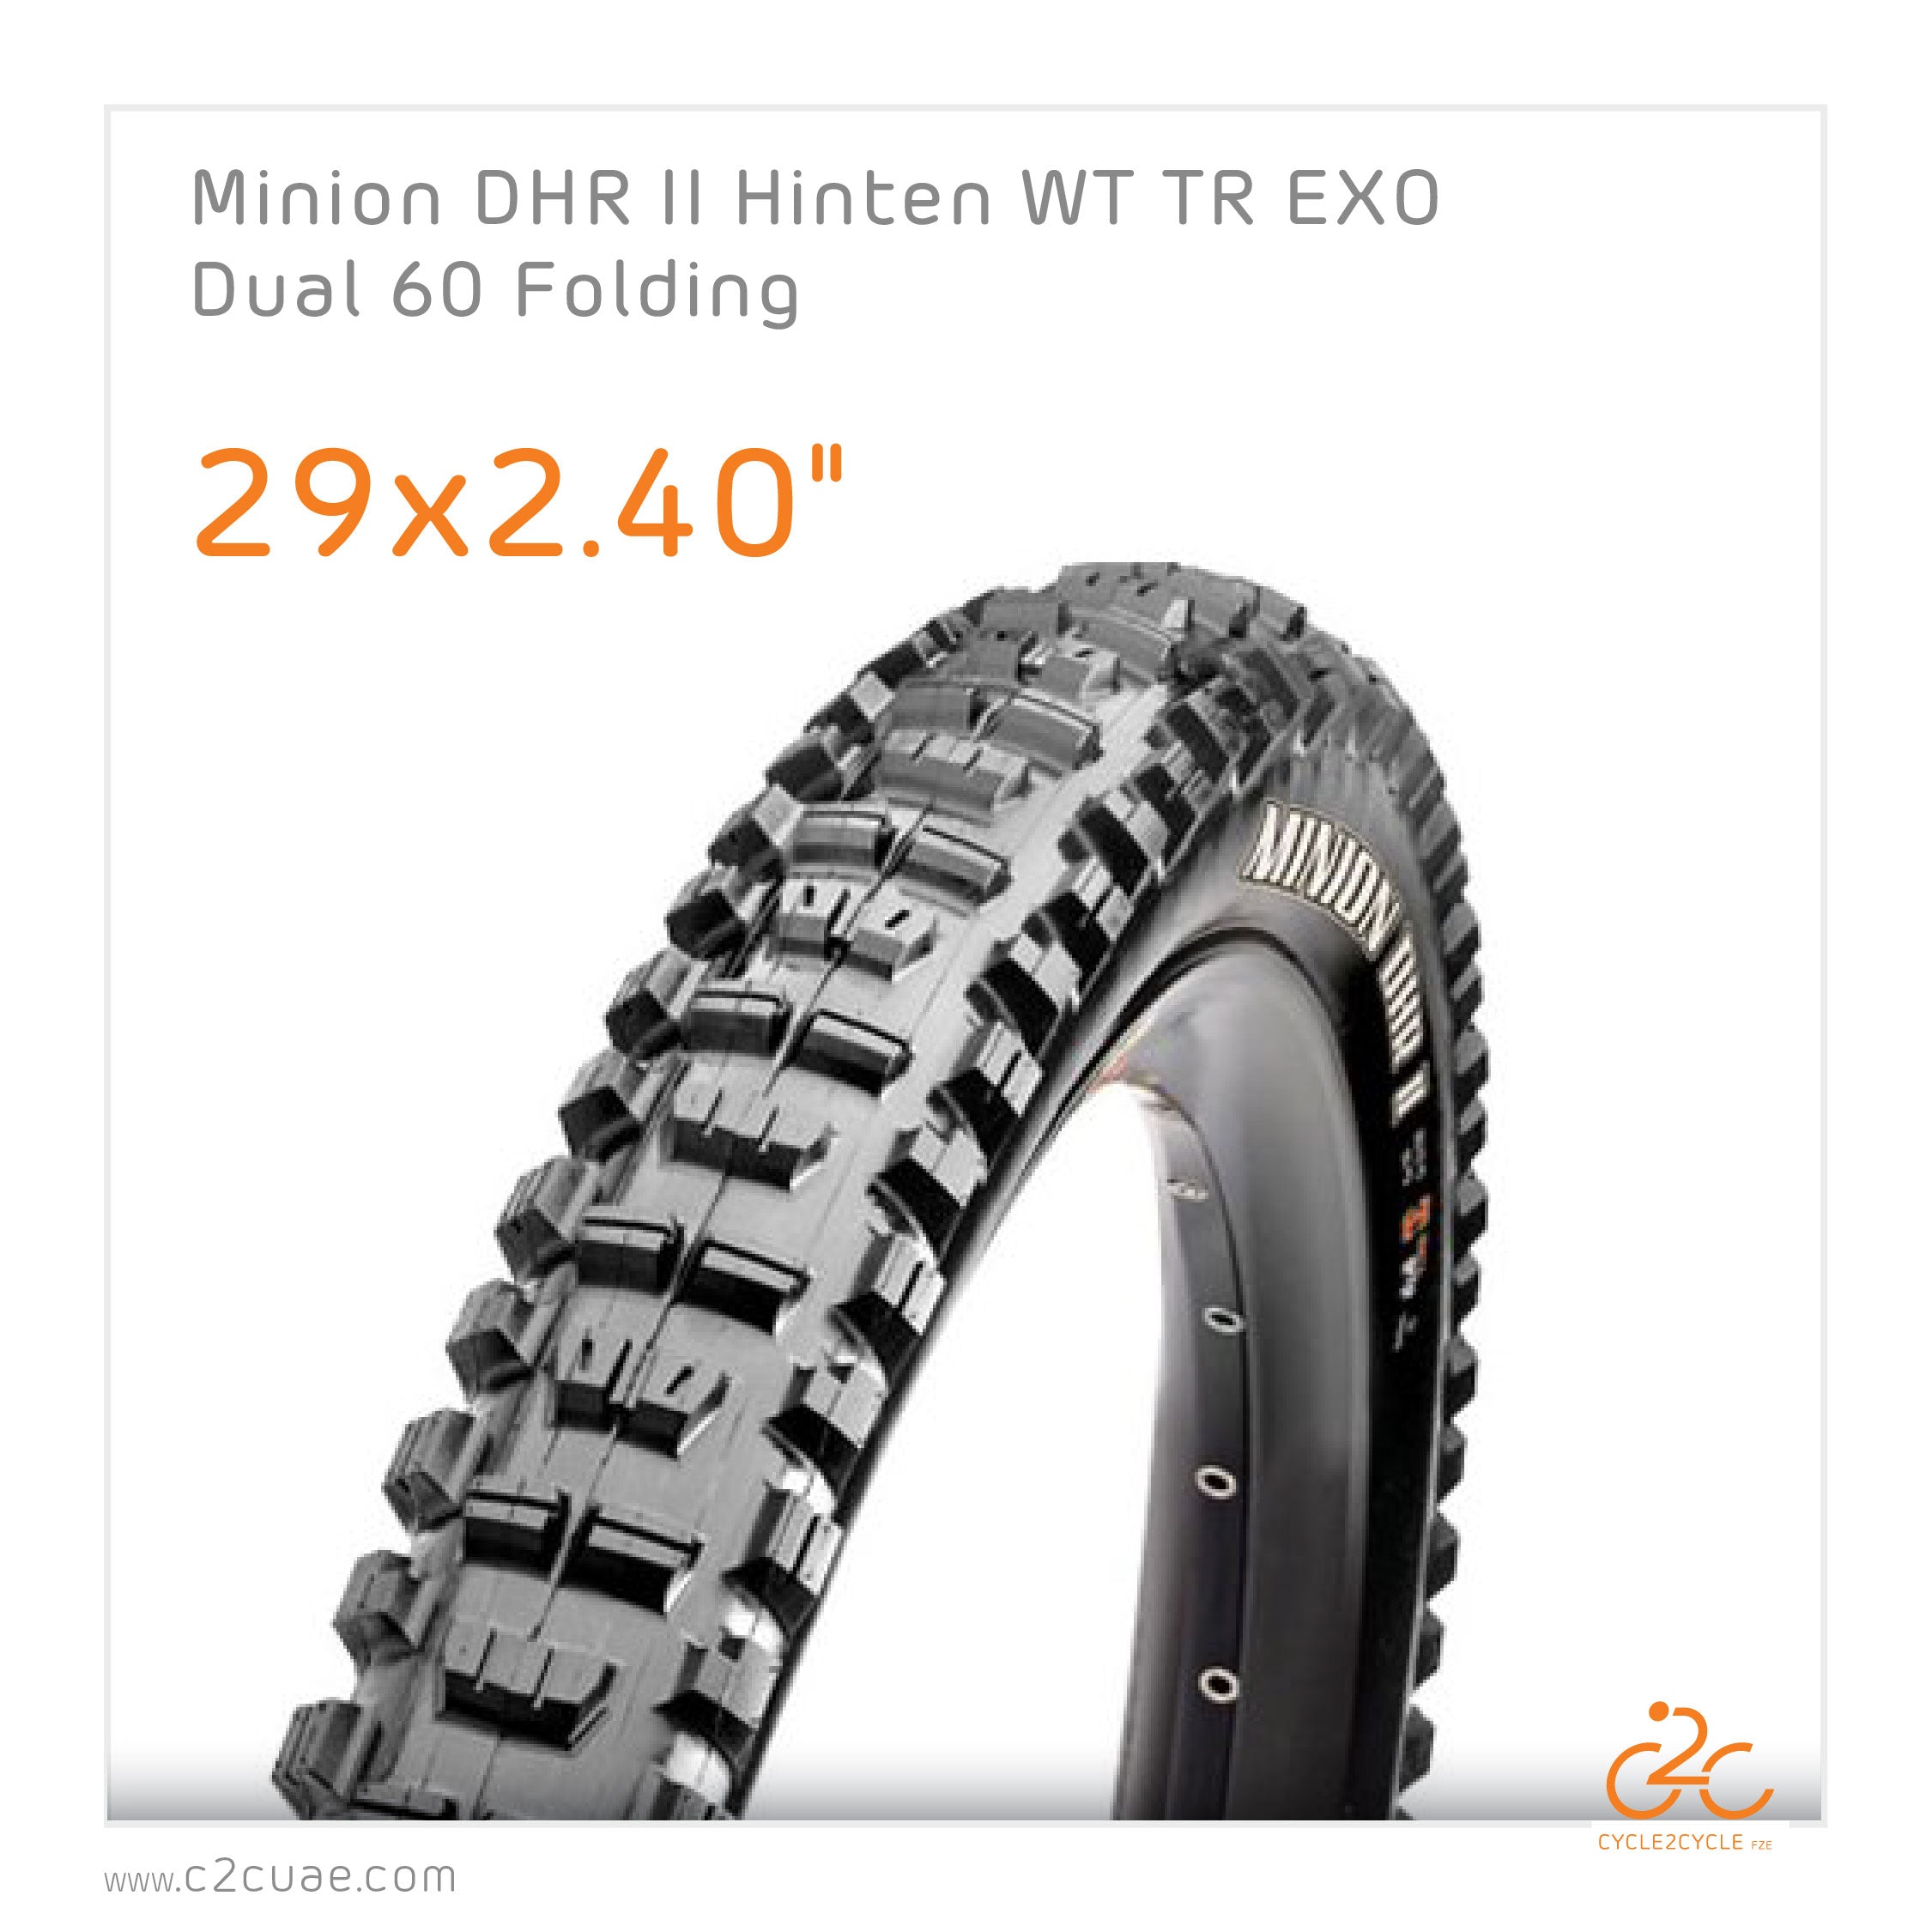 Maxxis Minion DHR II WT 29 x 2.40" TR EXO / per piece